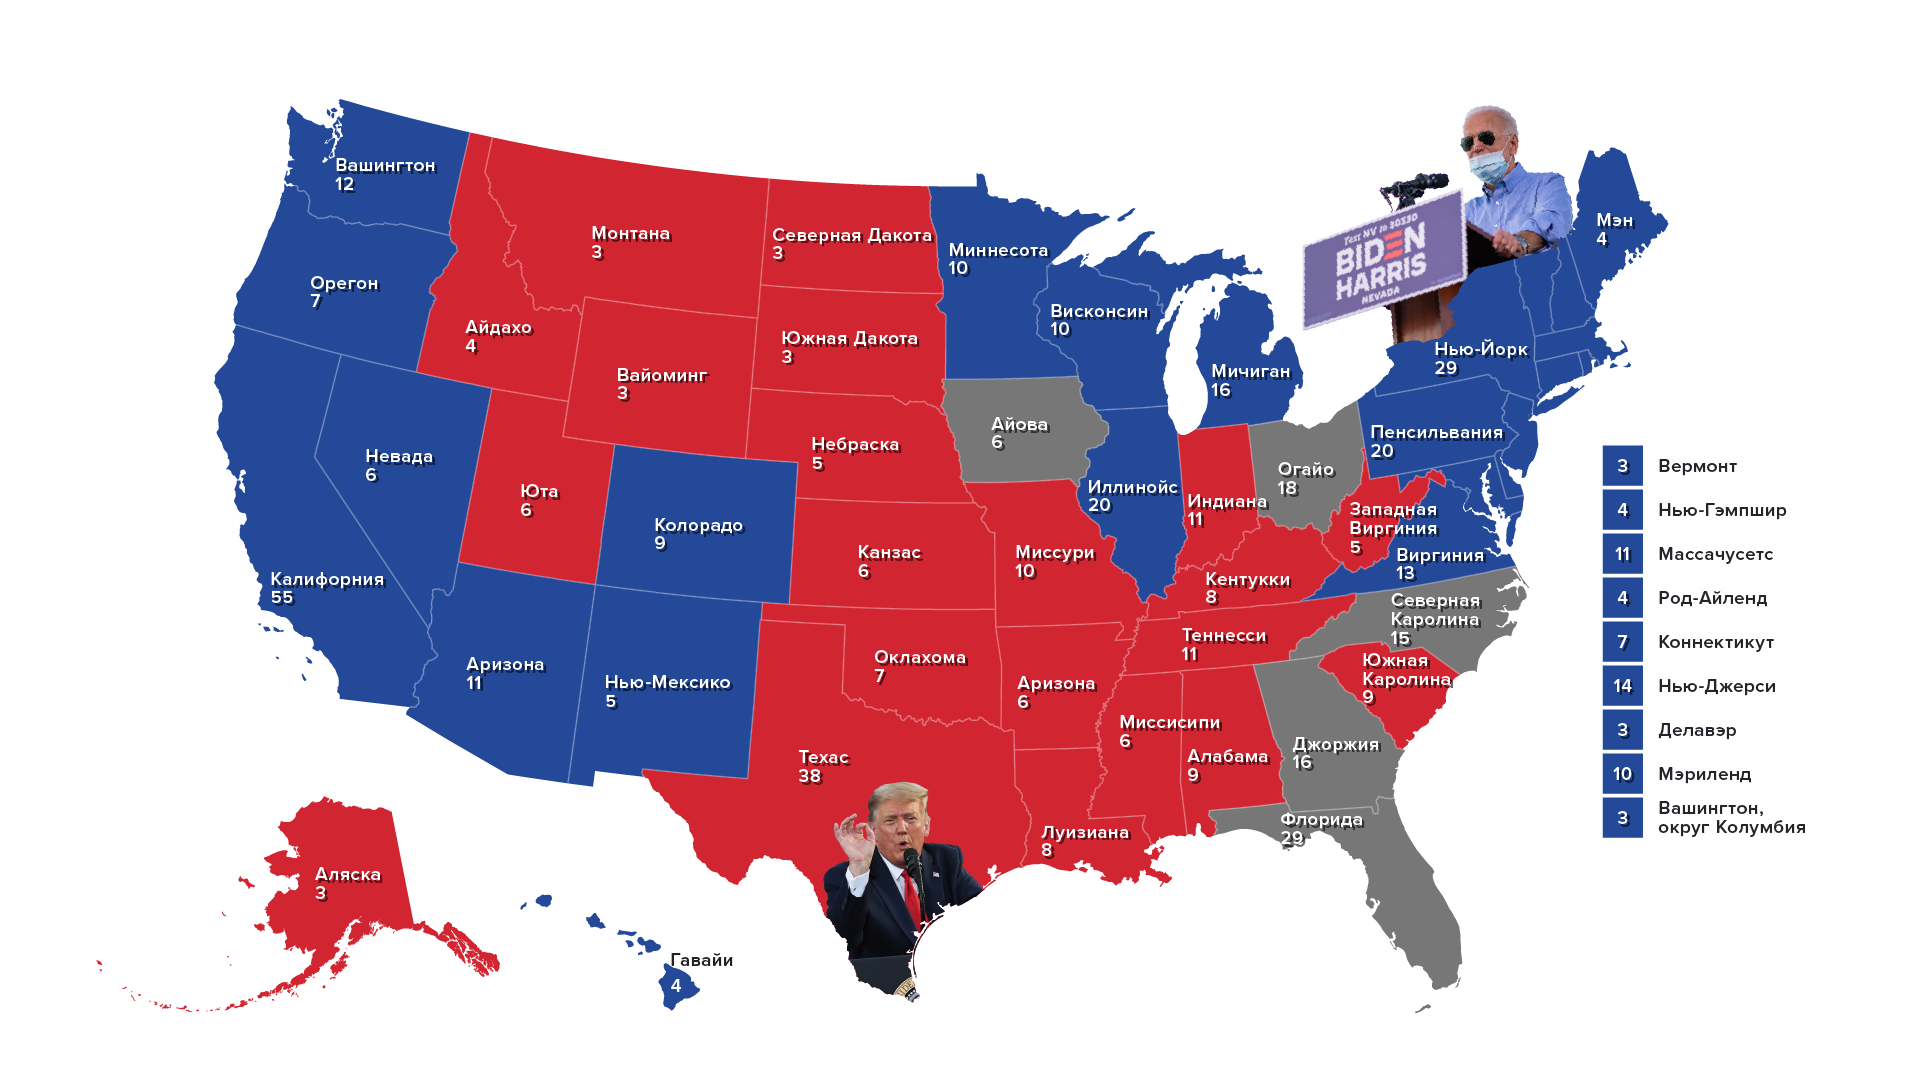 Сша привели. Карта Штатов США республиканцев и демократов. Карта Штатов США республиканцев и демократов 2021. Карта выборов США по Штатам. Демократические штаты в США 2020 карта.